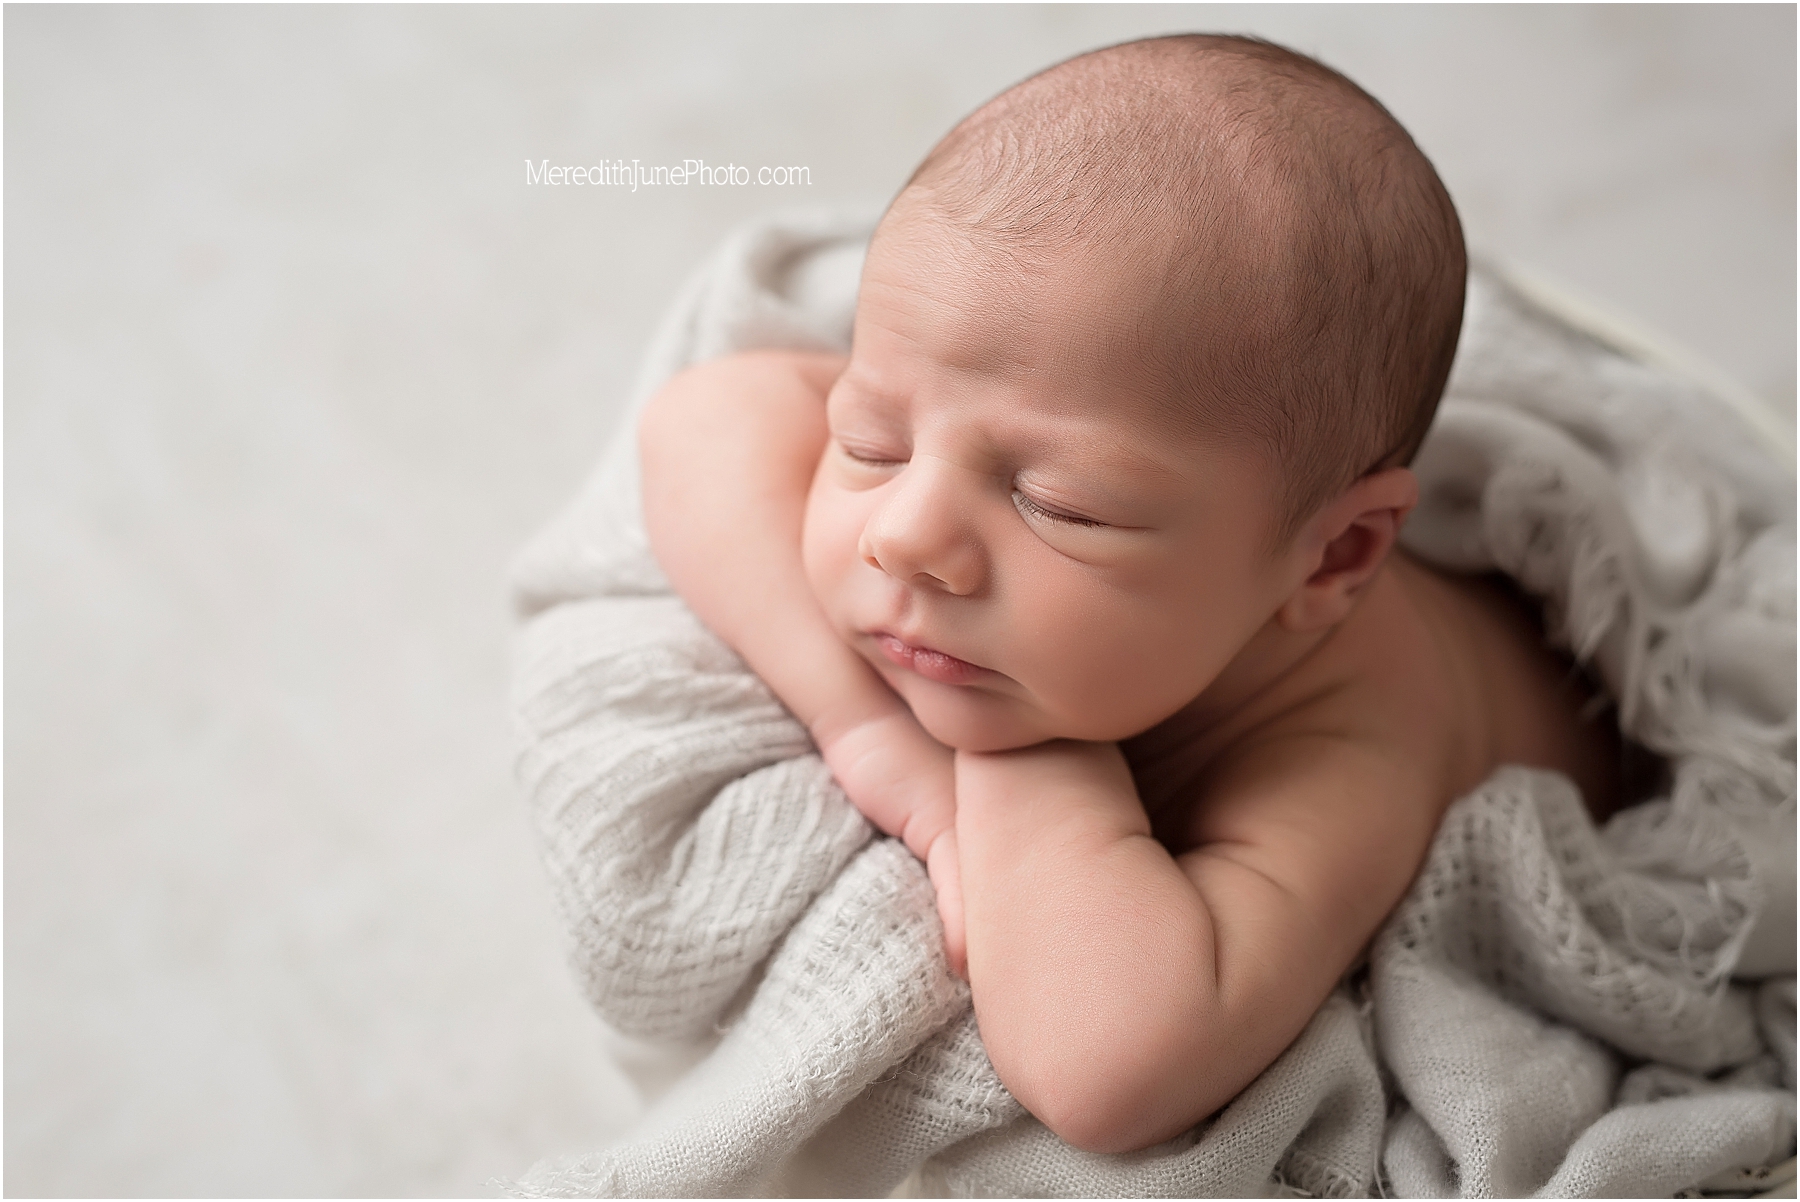 Baby boy Benjamin at Meredith June Photography 